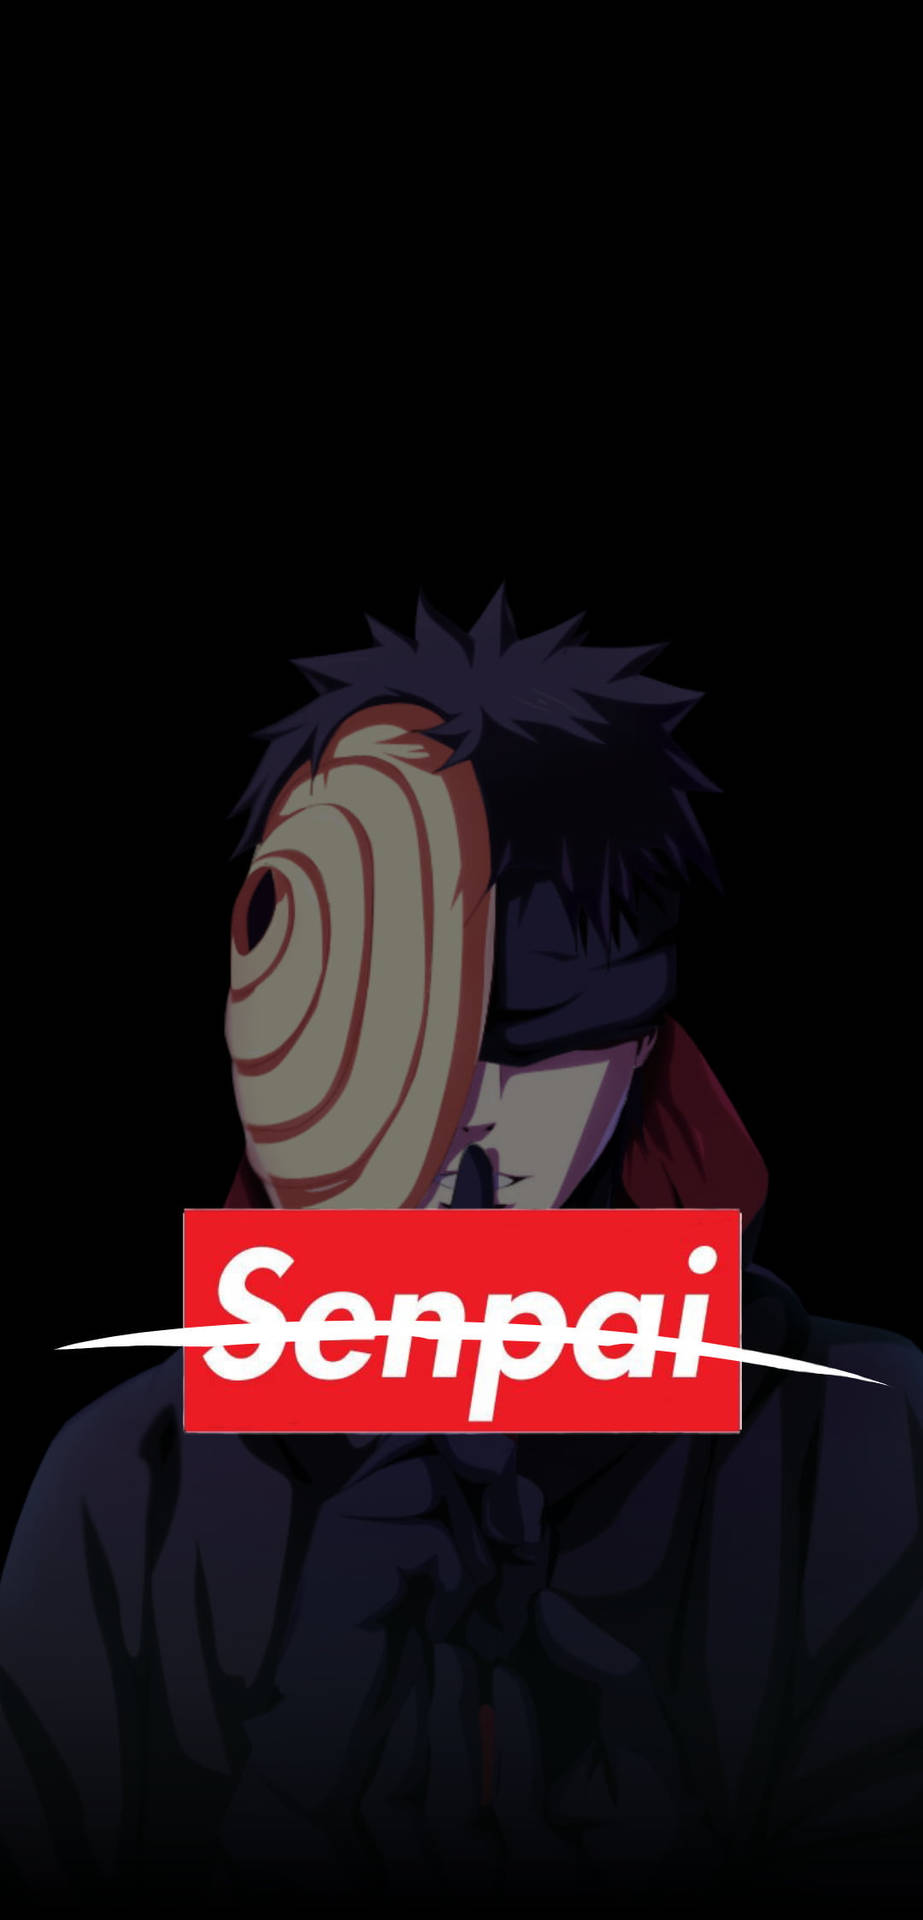 Naruto Supreme Senpai Background